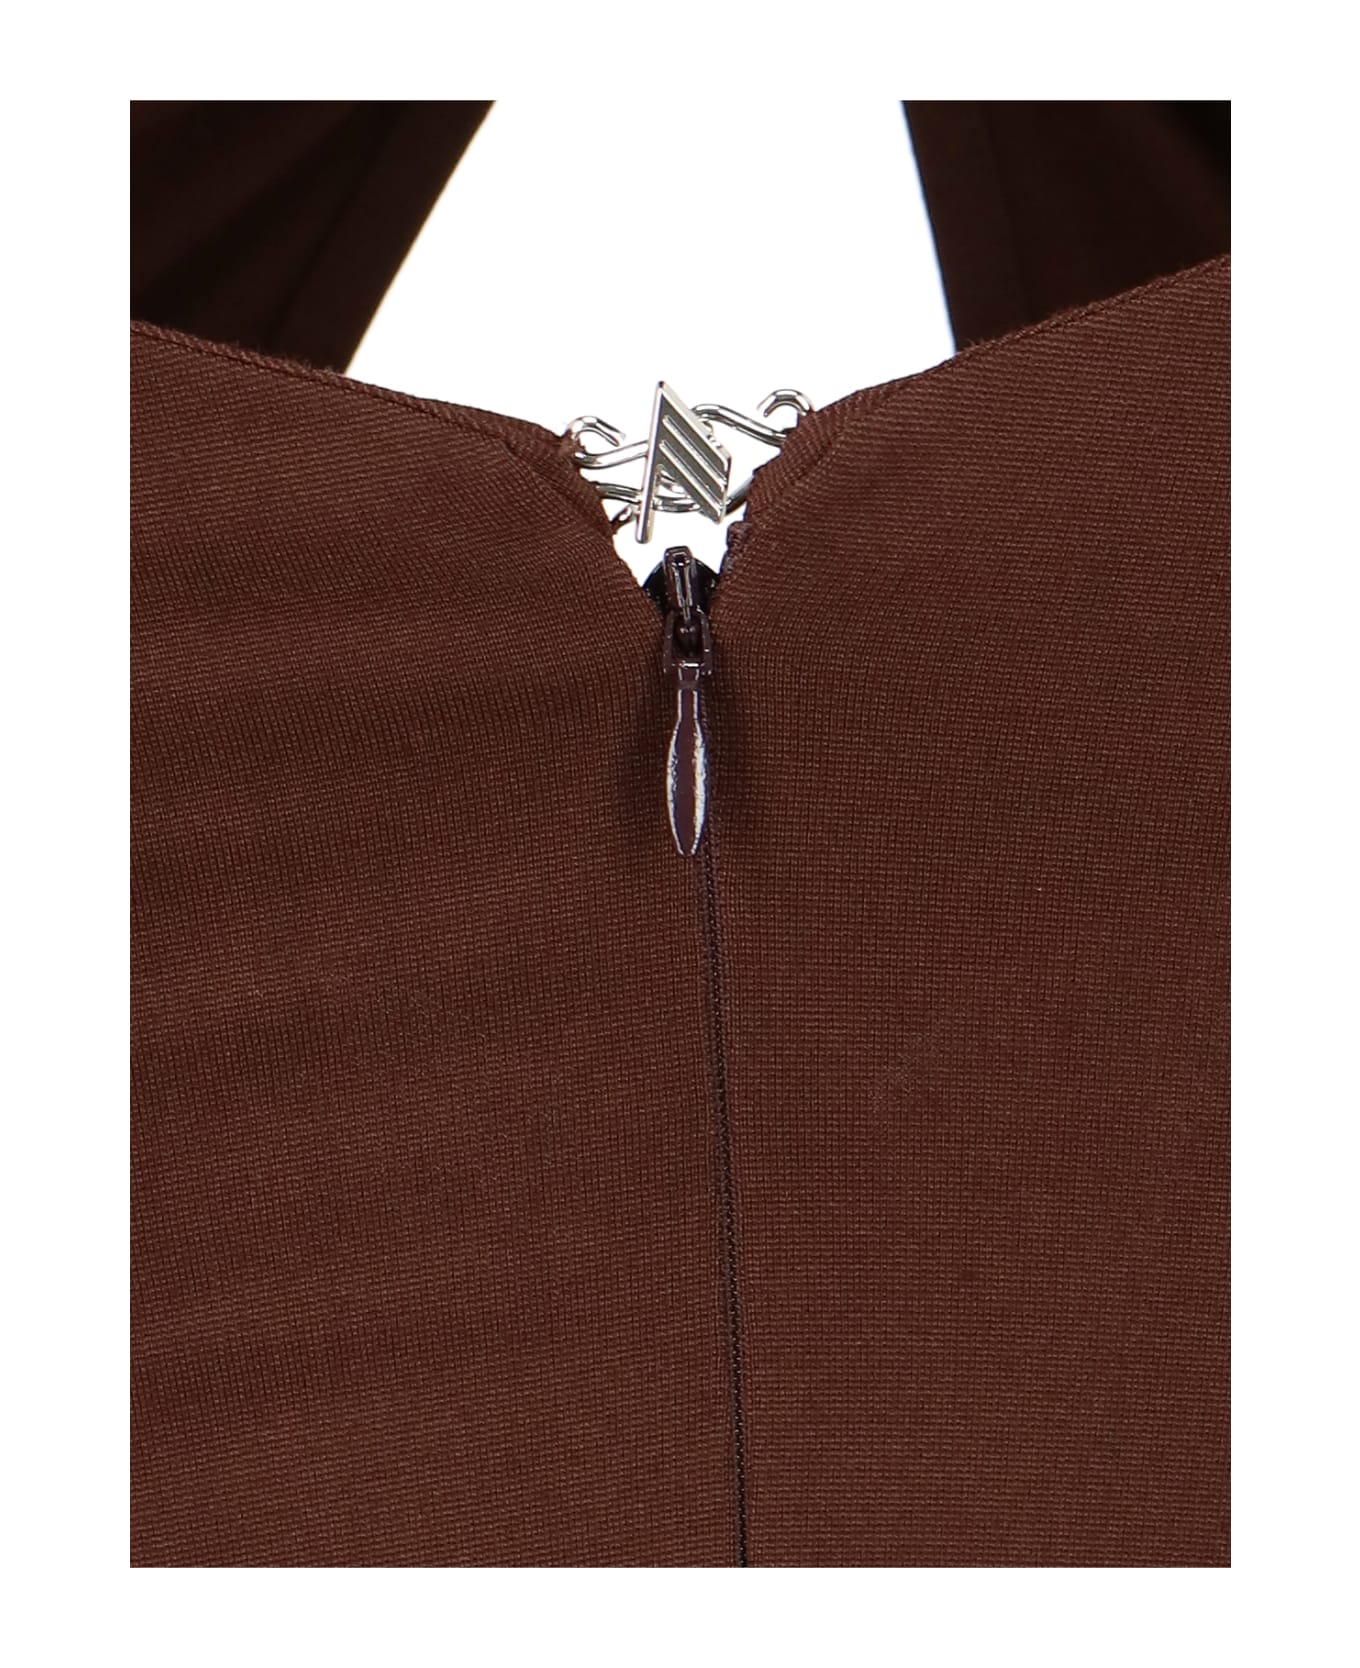 The Attico Chain Detail Dress - Brown